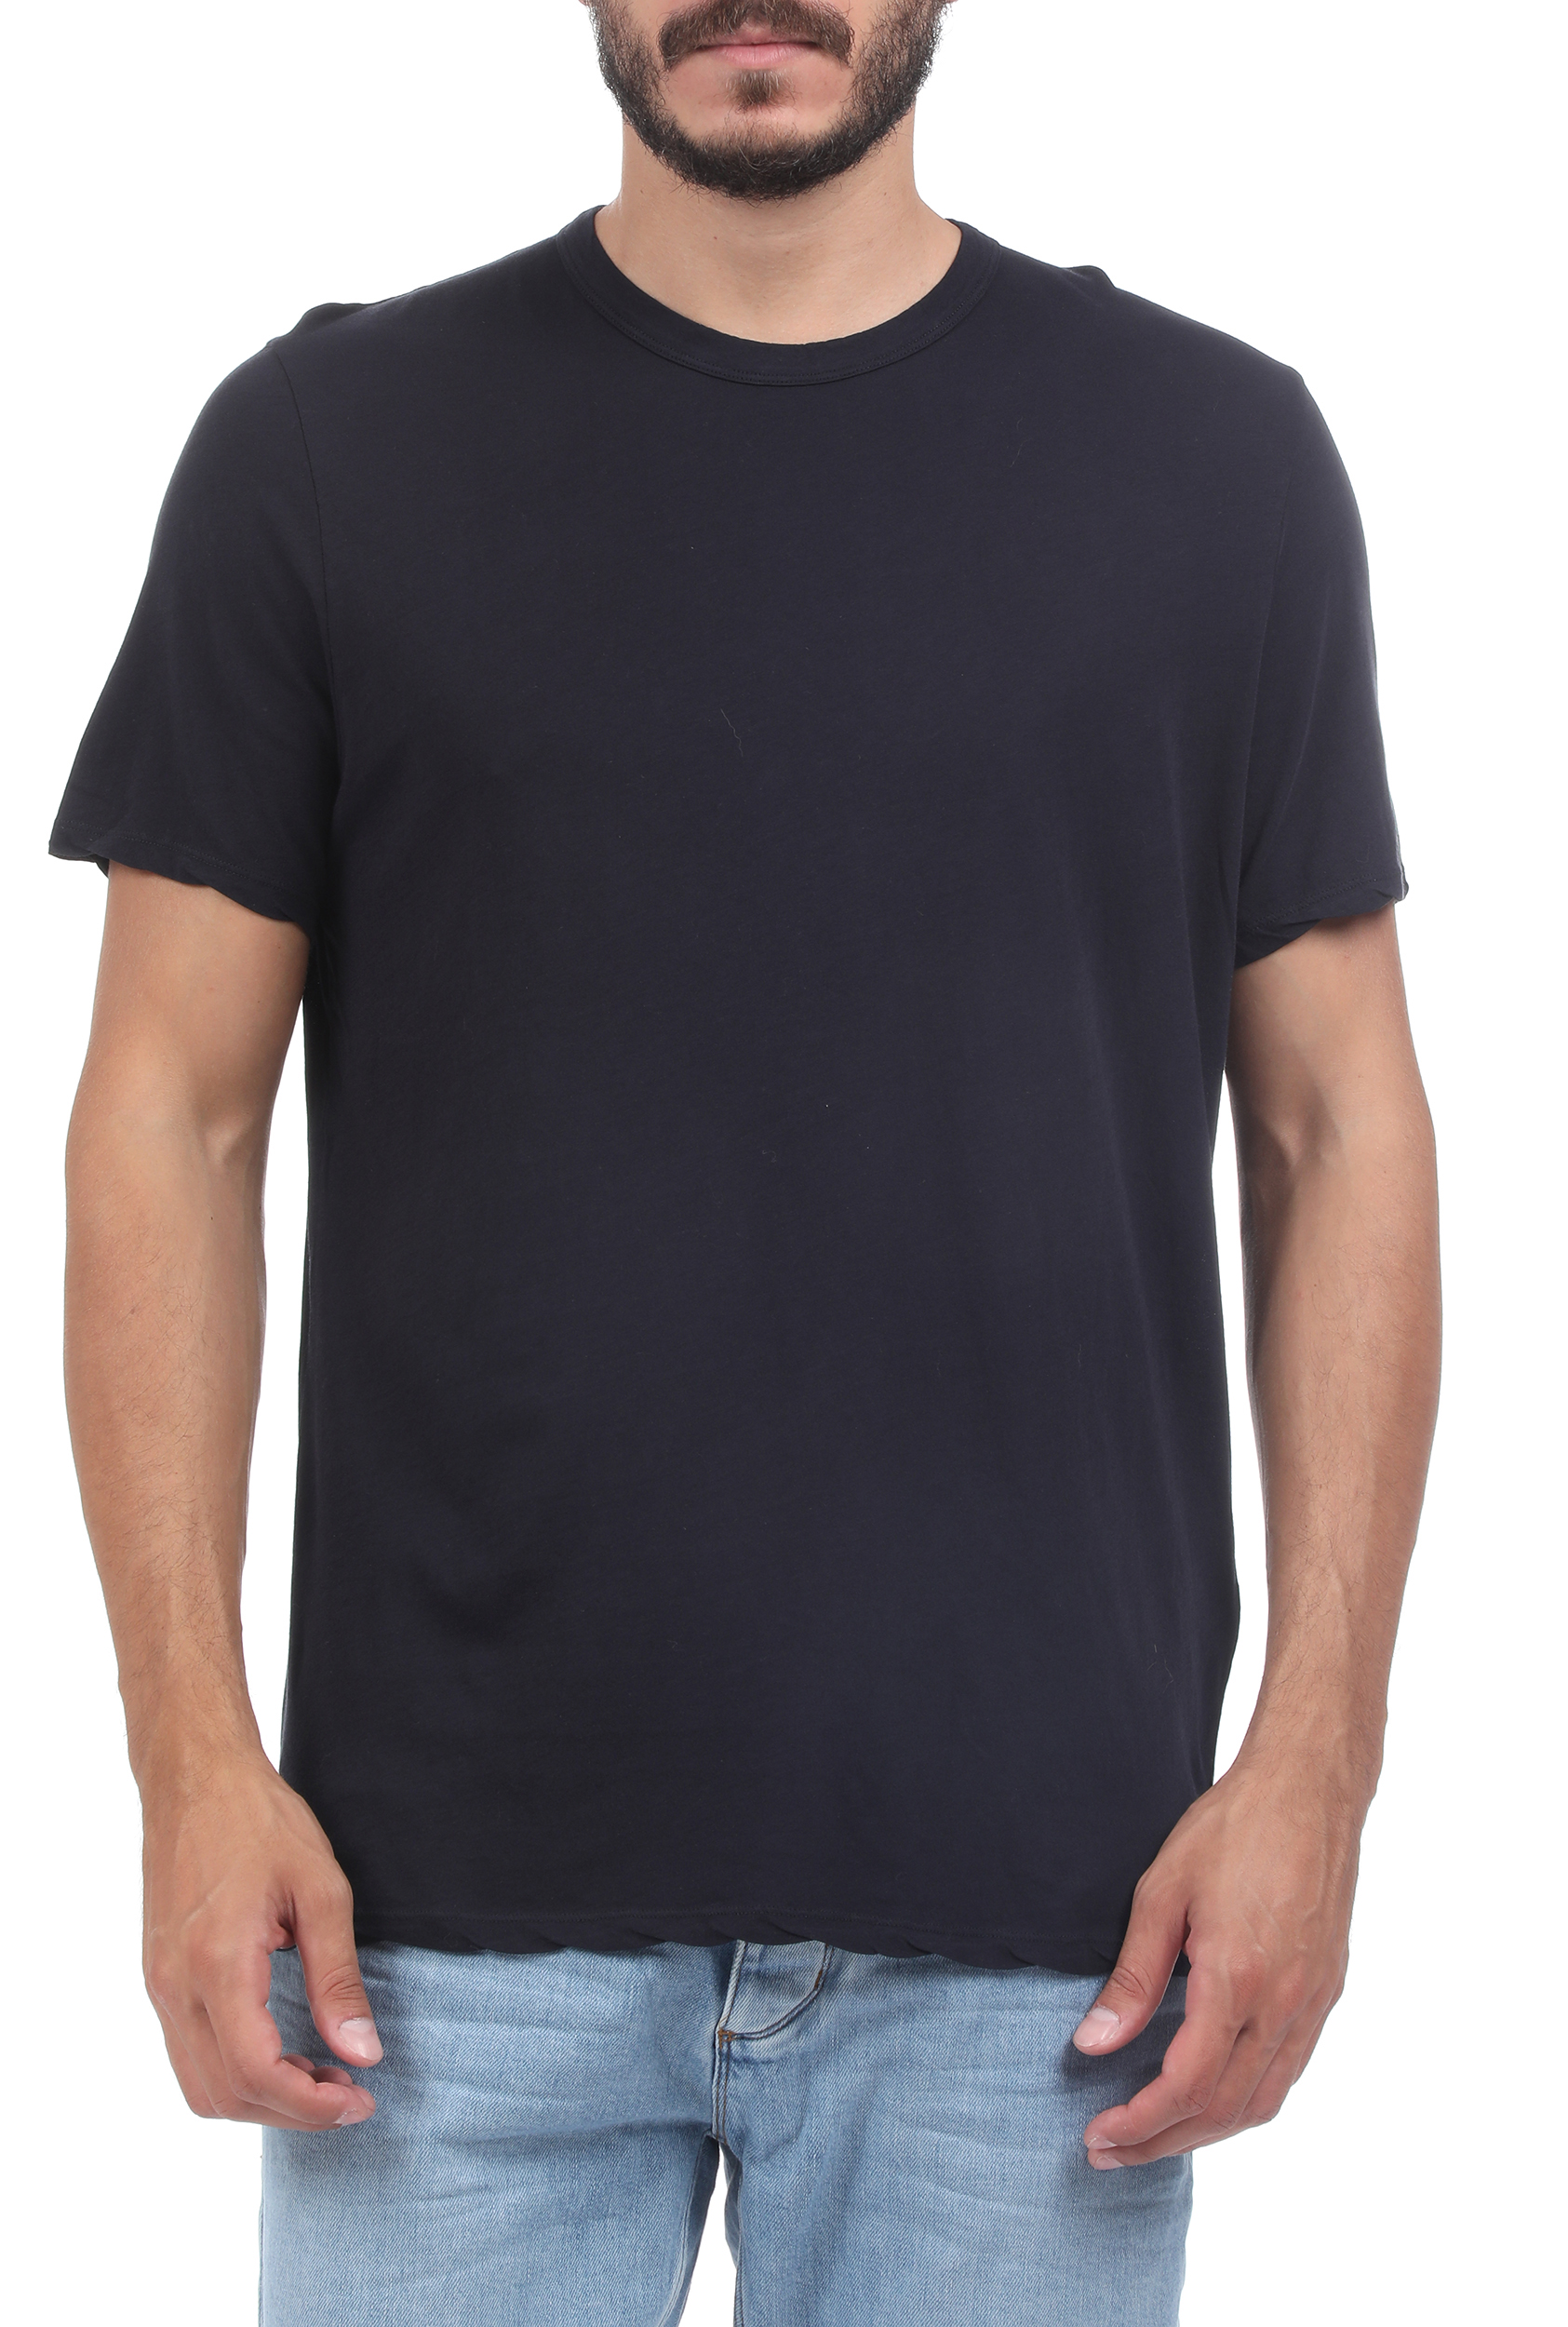 Ανδρικά/Ρούχα/Μπλούζες/Κοντομάνικες AMERICAN VINTAGE - Ανδρικό t-shirt AMERICAN VINTAGE μαύρο